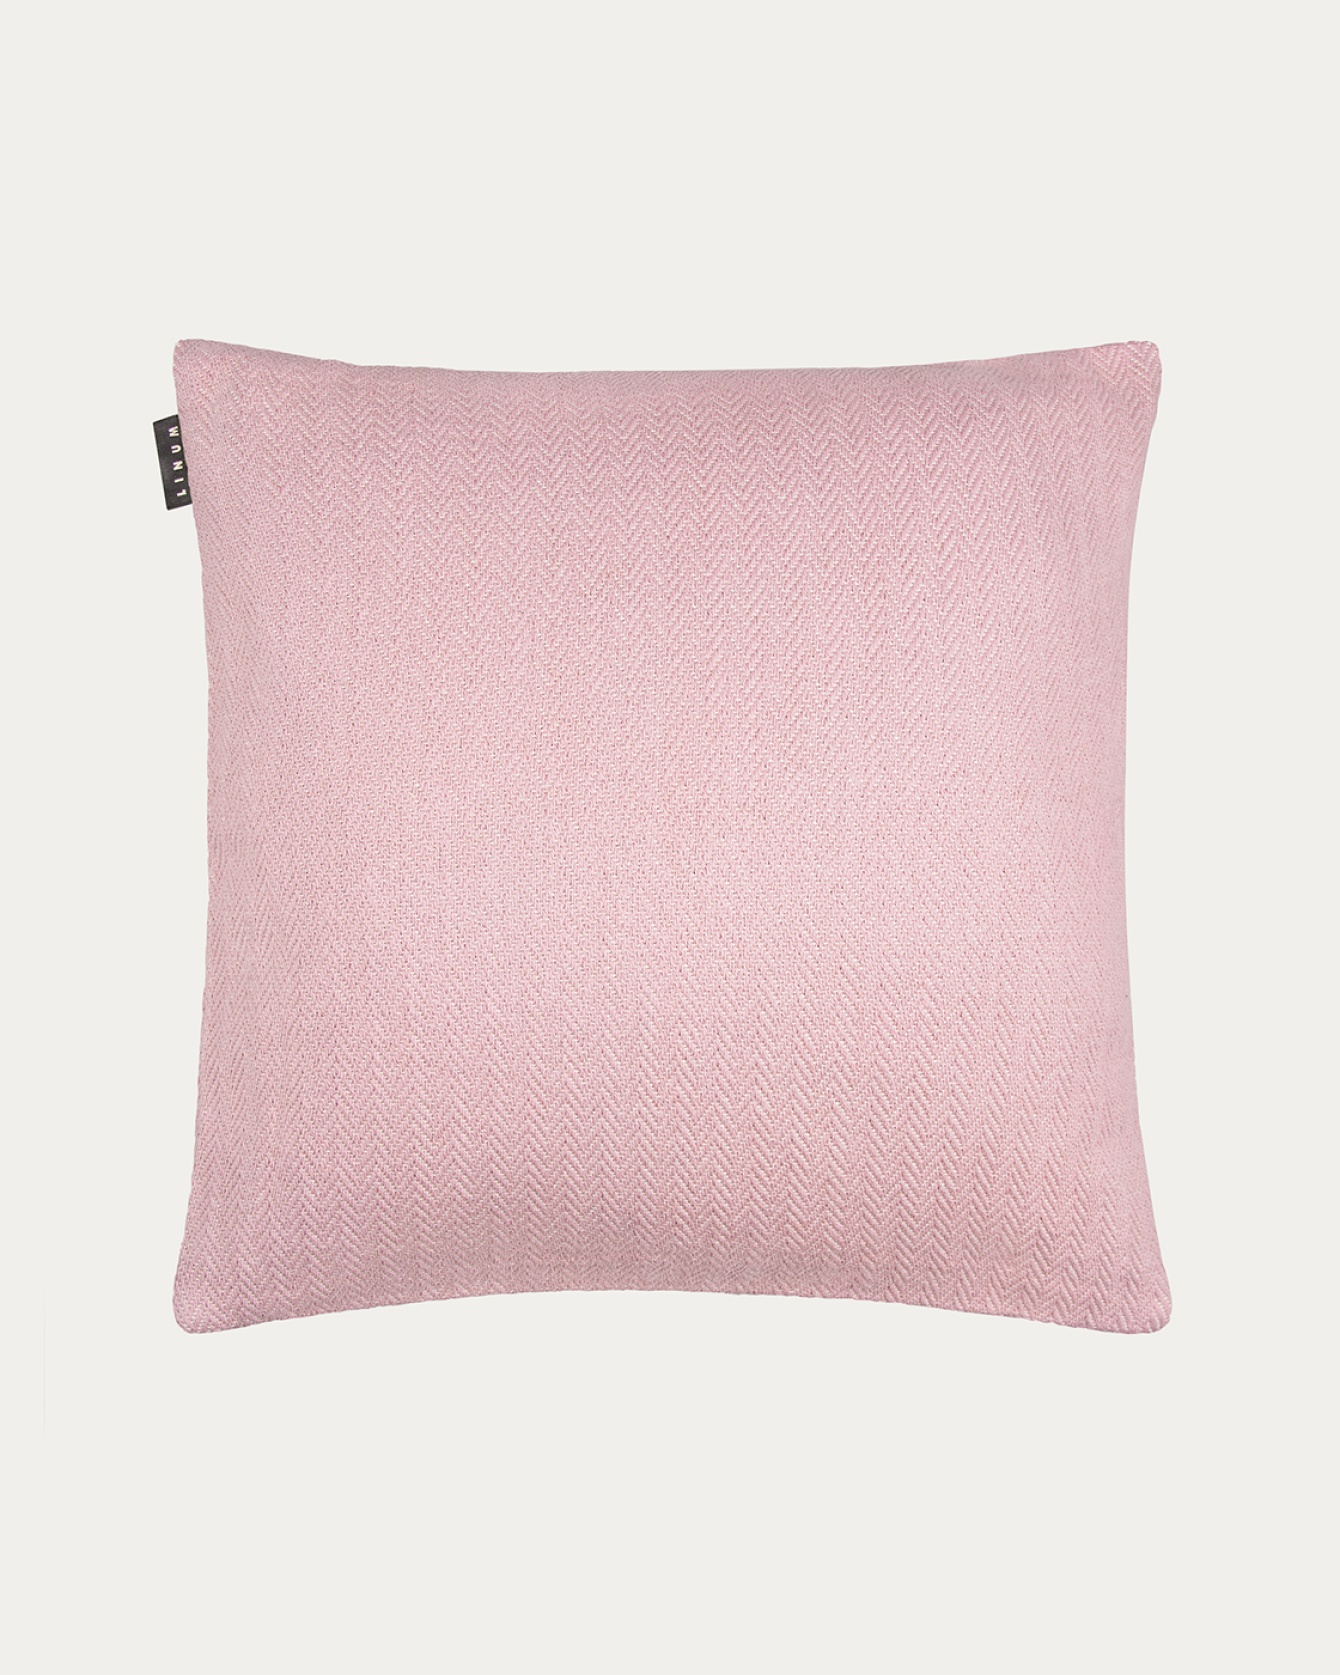 Image du produit housse de coussin SHEPARD rose poudré en coton doux avec un motif à chevrons discret de LINUM DESIGN. Taille 50 x 50 cm.